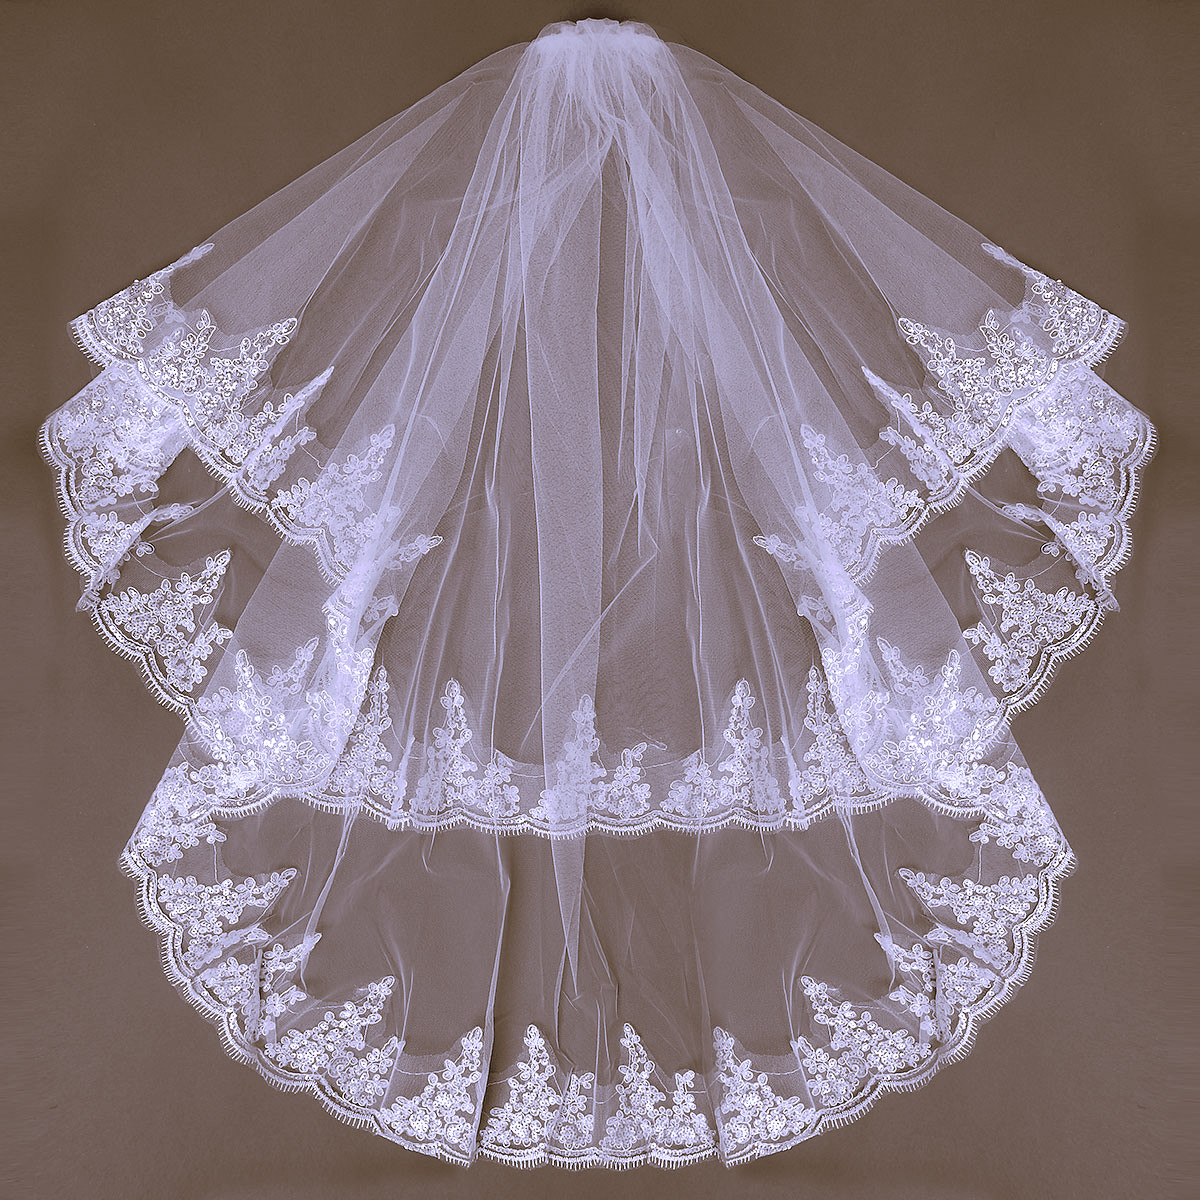 

2 слоя кружева вышивки бисером жемчужного края свадебный свадьба локоть вуаль с гребнем